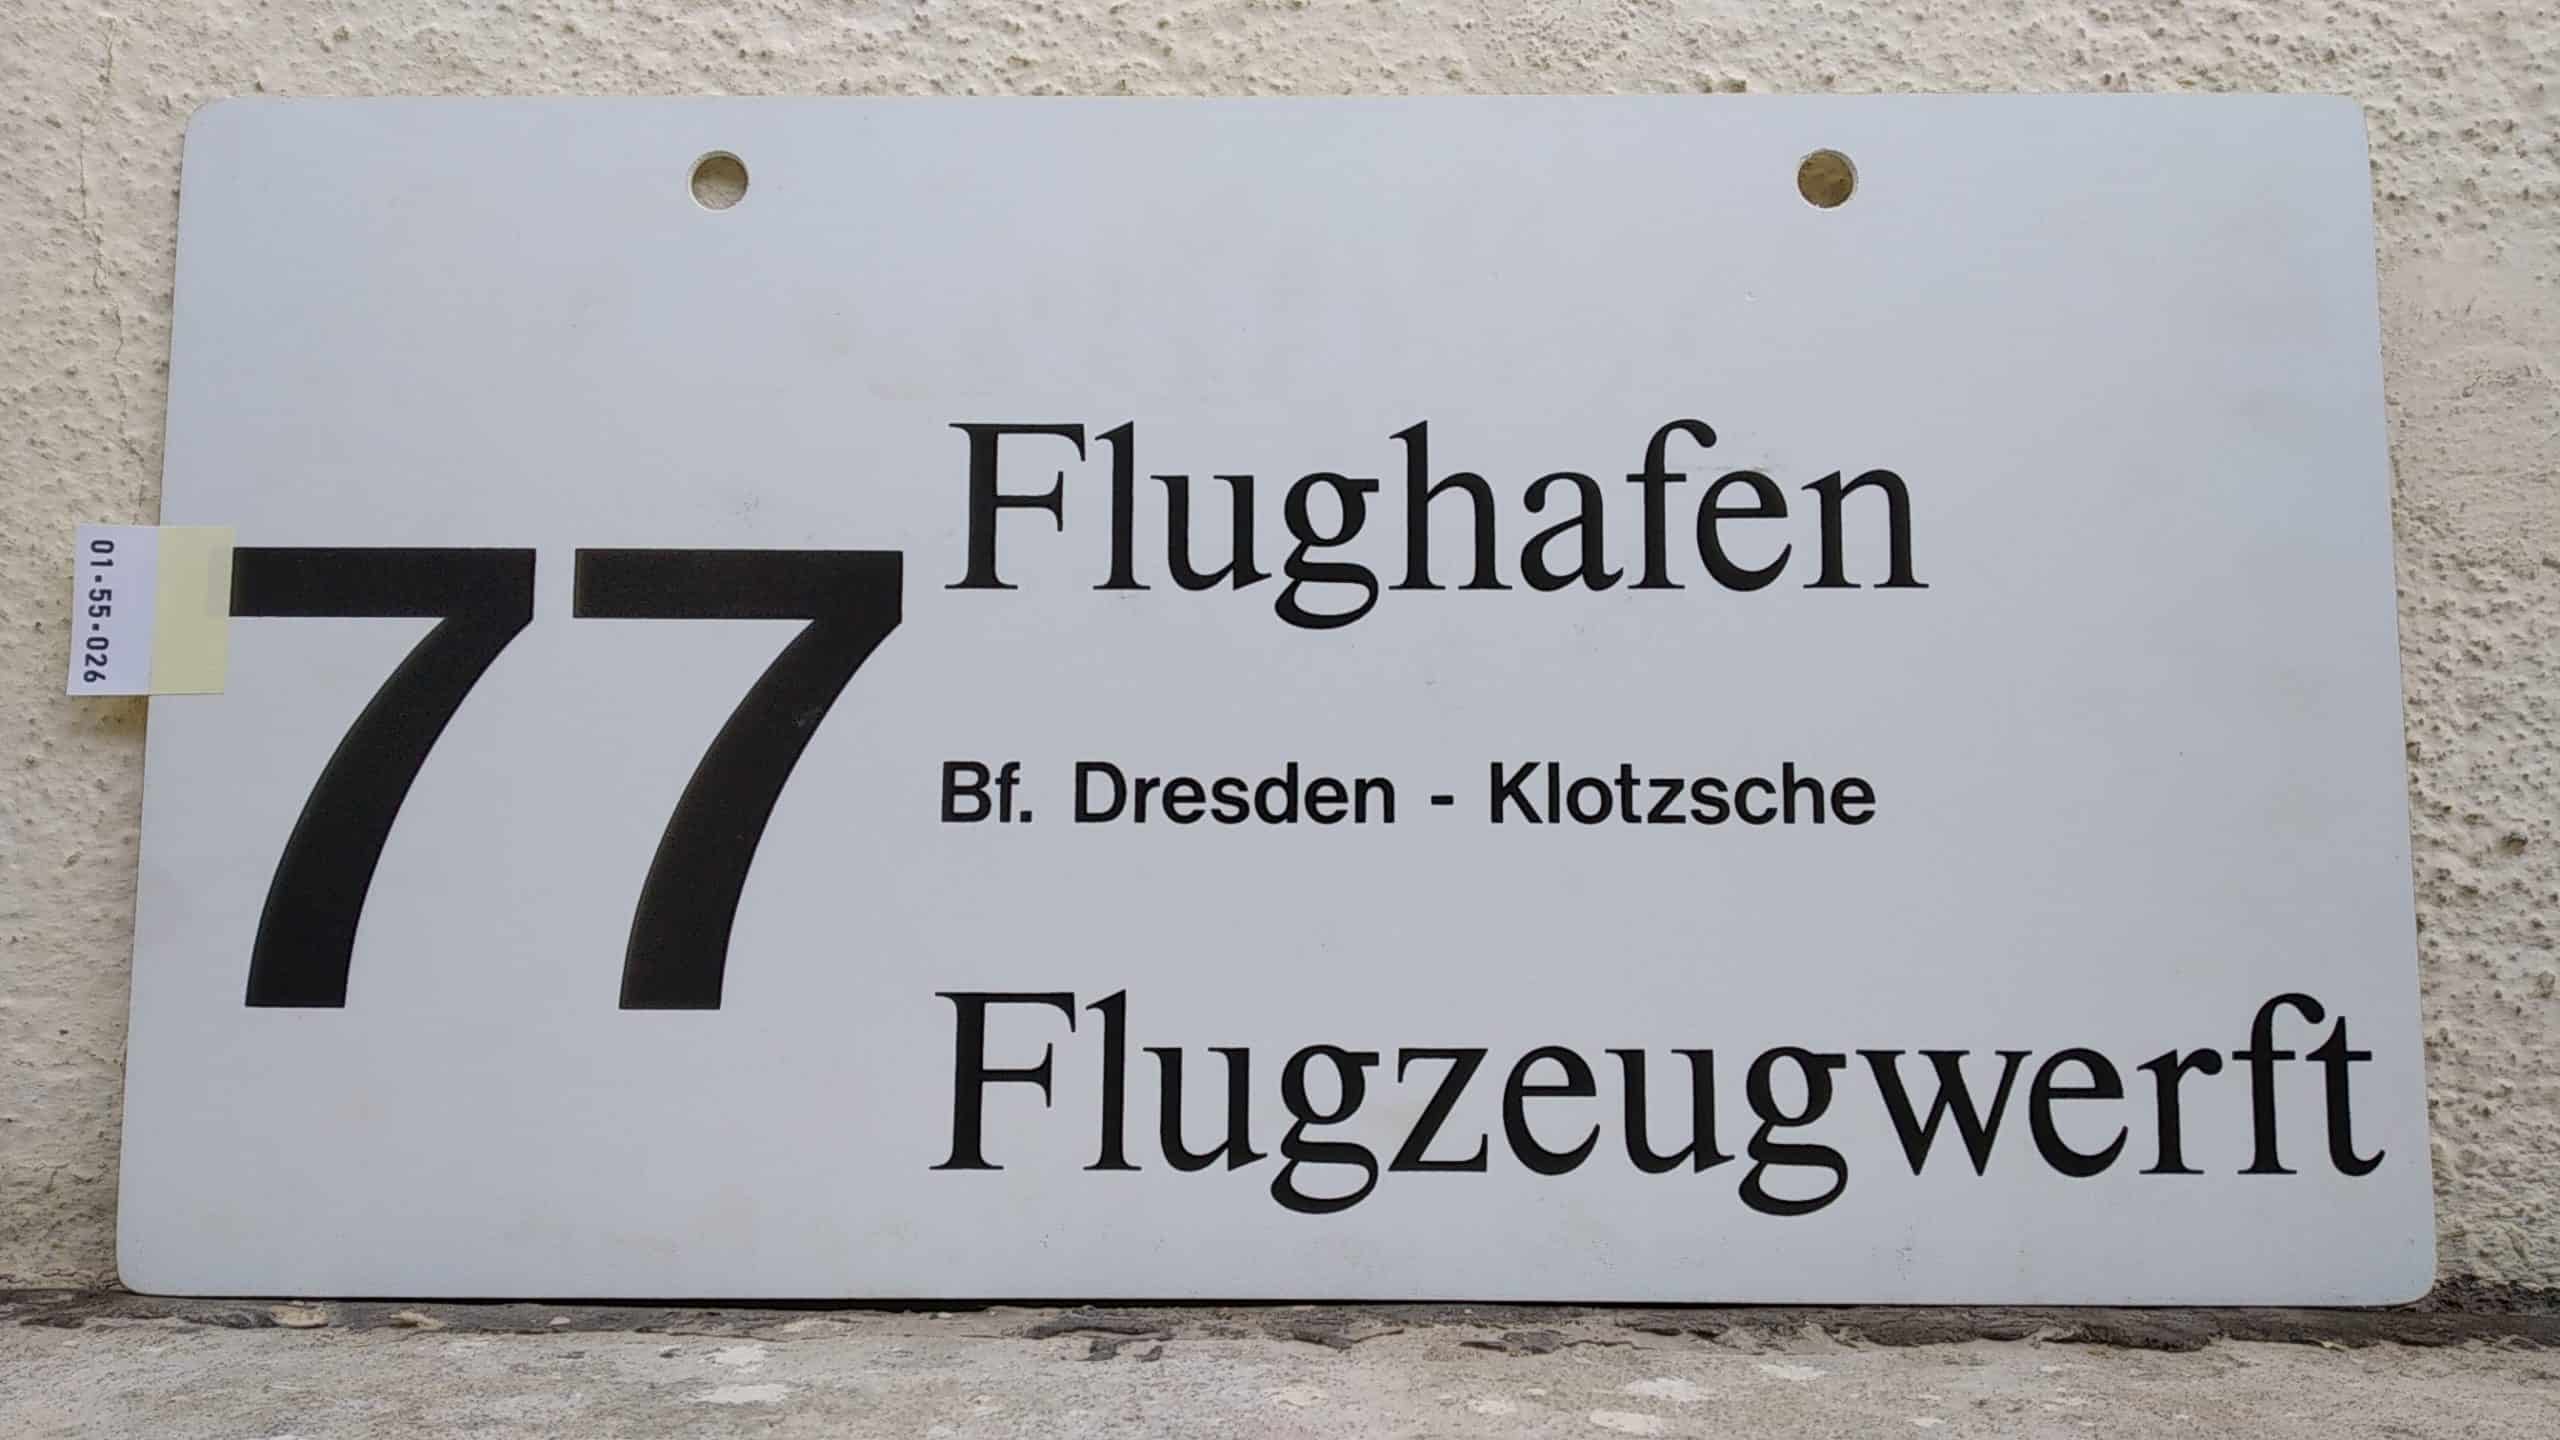 Ein seltenes Bus-Linienschild aus Dresden der Linie 77 von Flughafen nach Flugzeugwerft #1